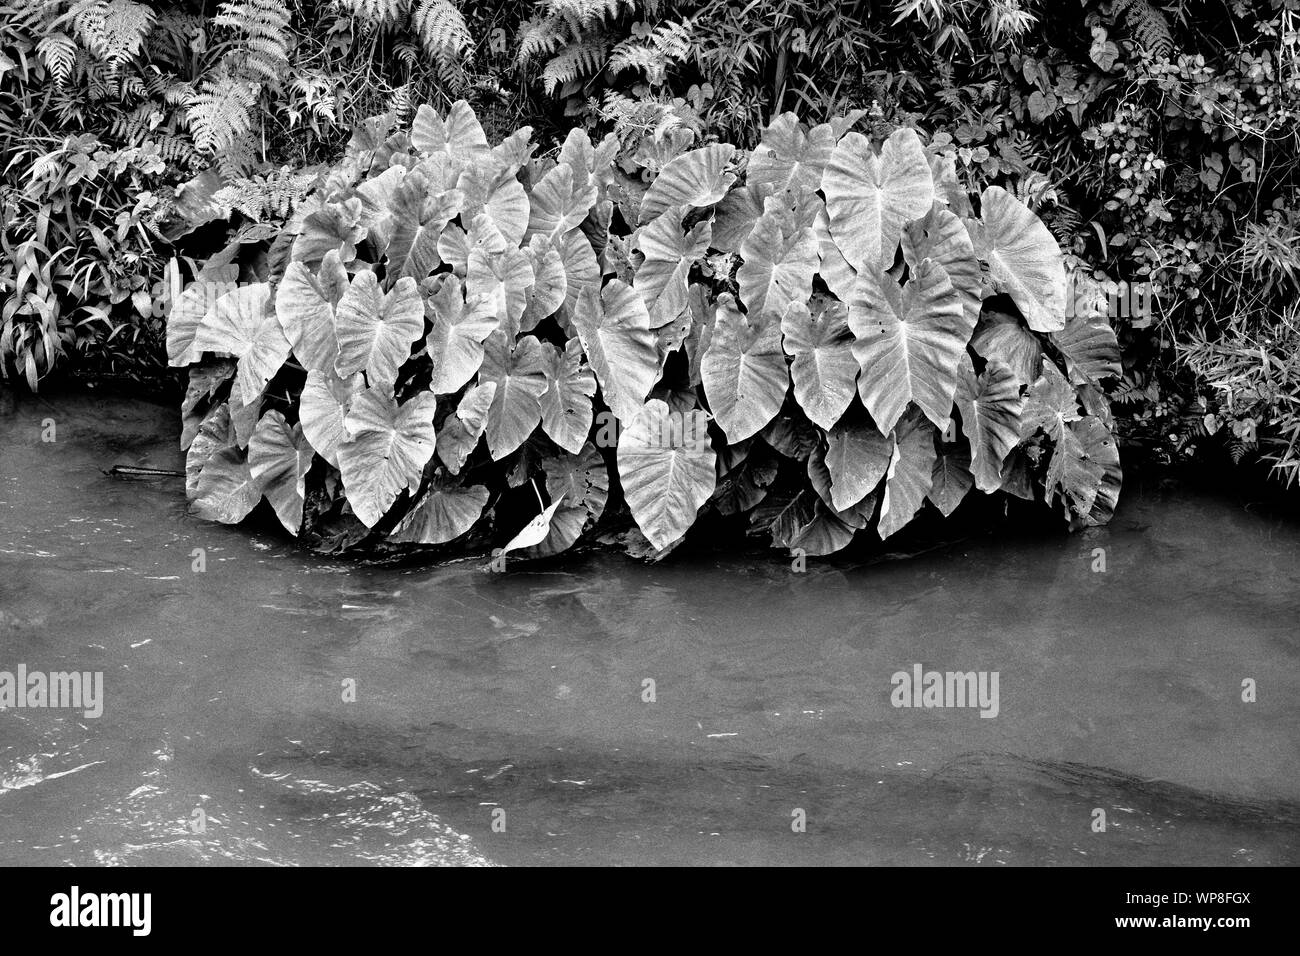 Impianti di Taro (Colocasia esculenta) cresce in piccolo ruscello di acqua termale nel villaggio di Furnas. Sao Miguel island, isole Azzorre, Portogallo. Foto Stock